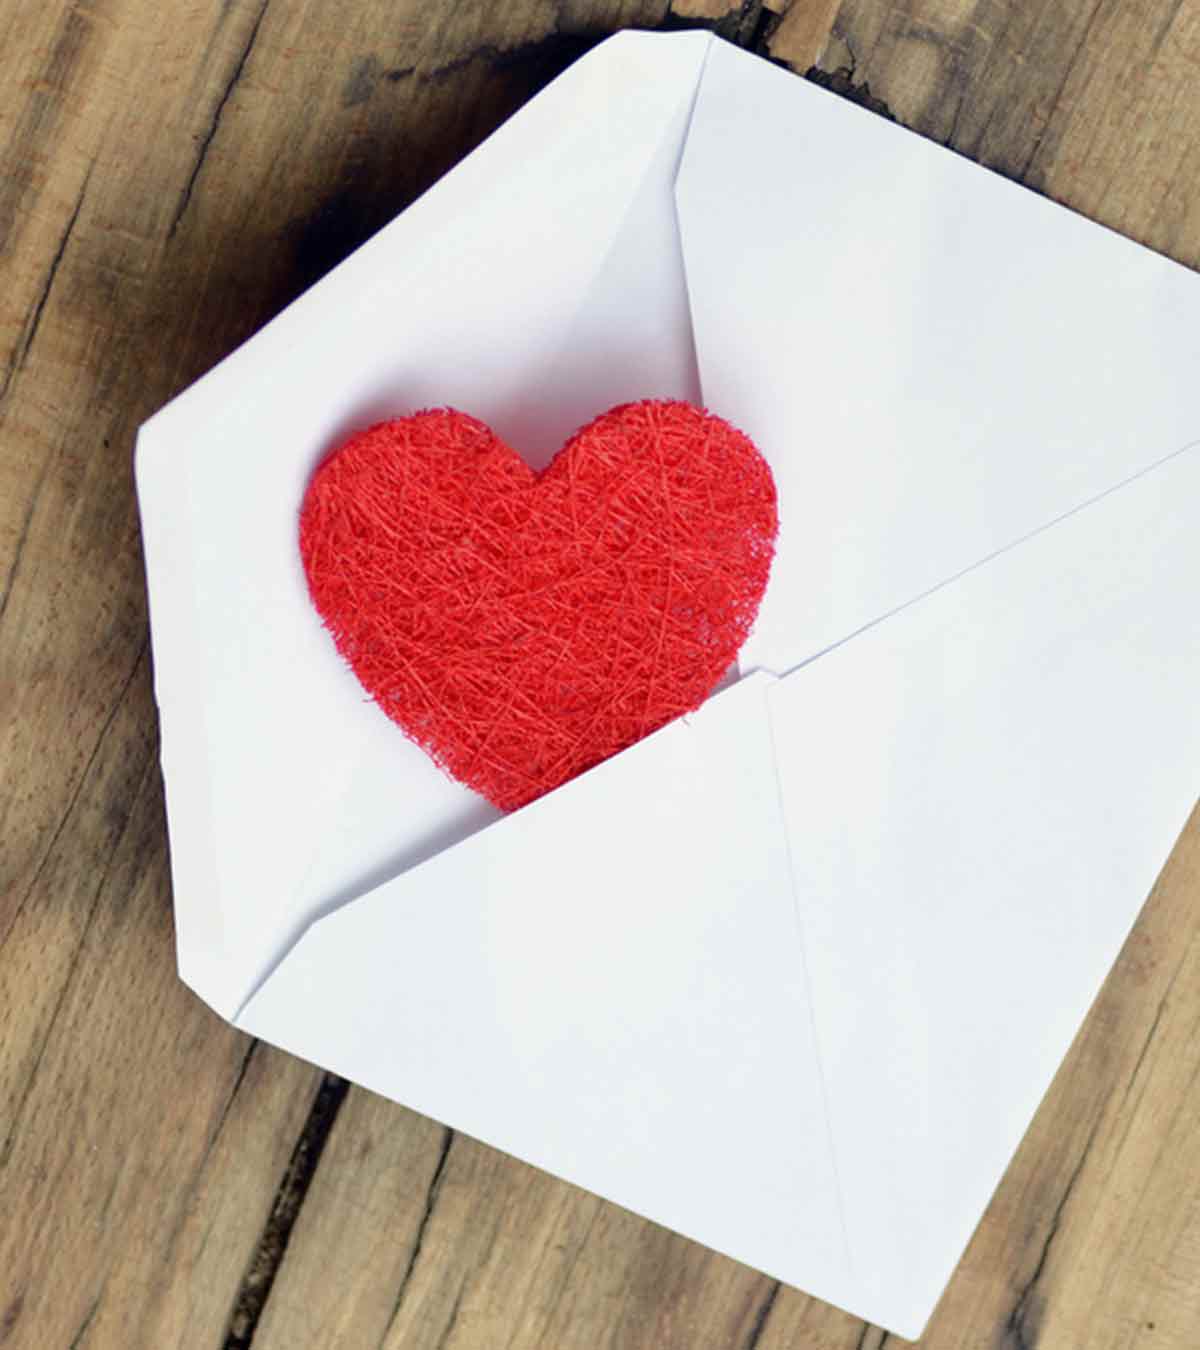 8 Sample Love Letter For Boyfriend In Hindi | बॉयफ्रेंड के लिए प्रेम पत्र लिखने के तरीके